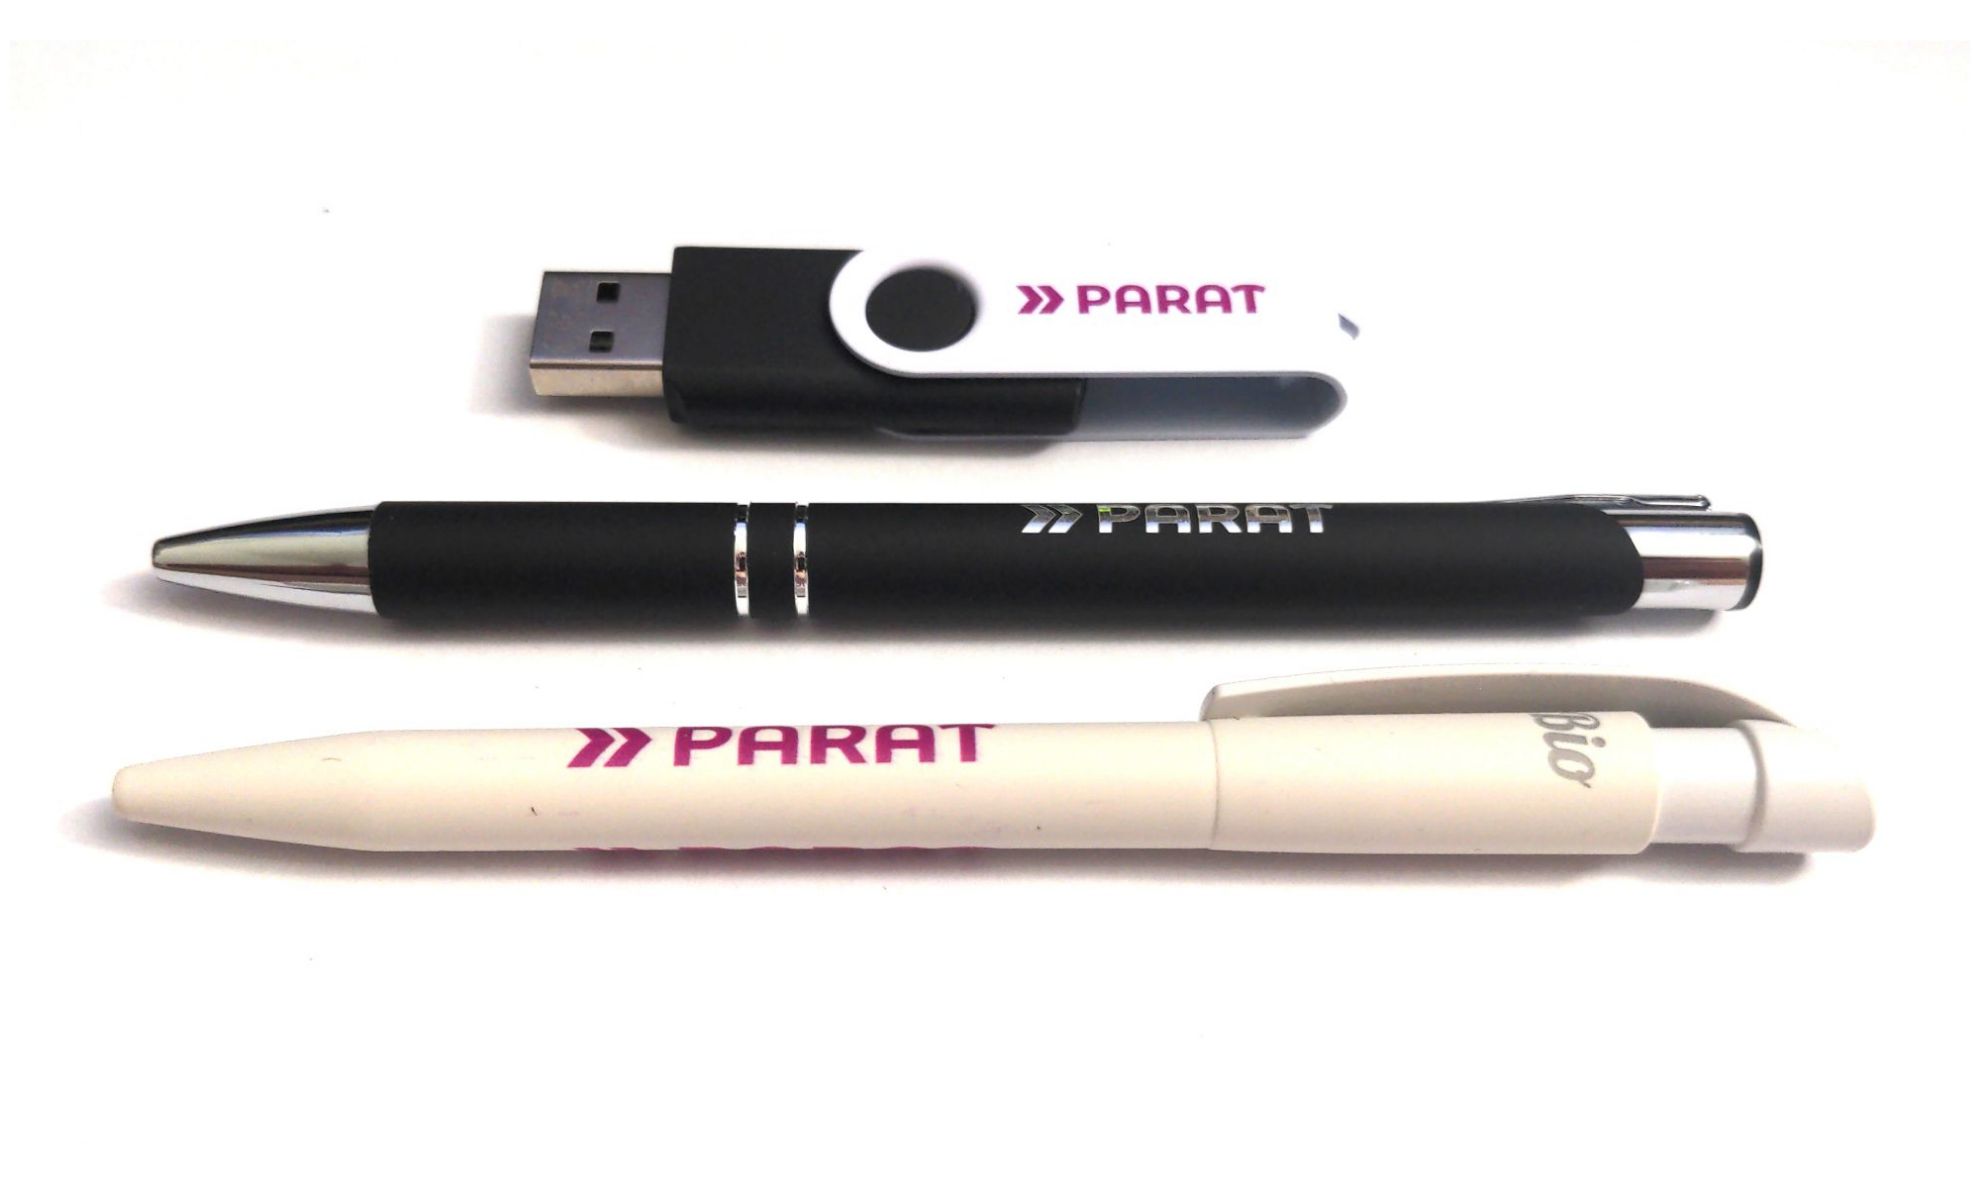 USB-Stick und zwei Kugelschreiber jeweils mit PARAT-Logo